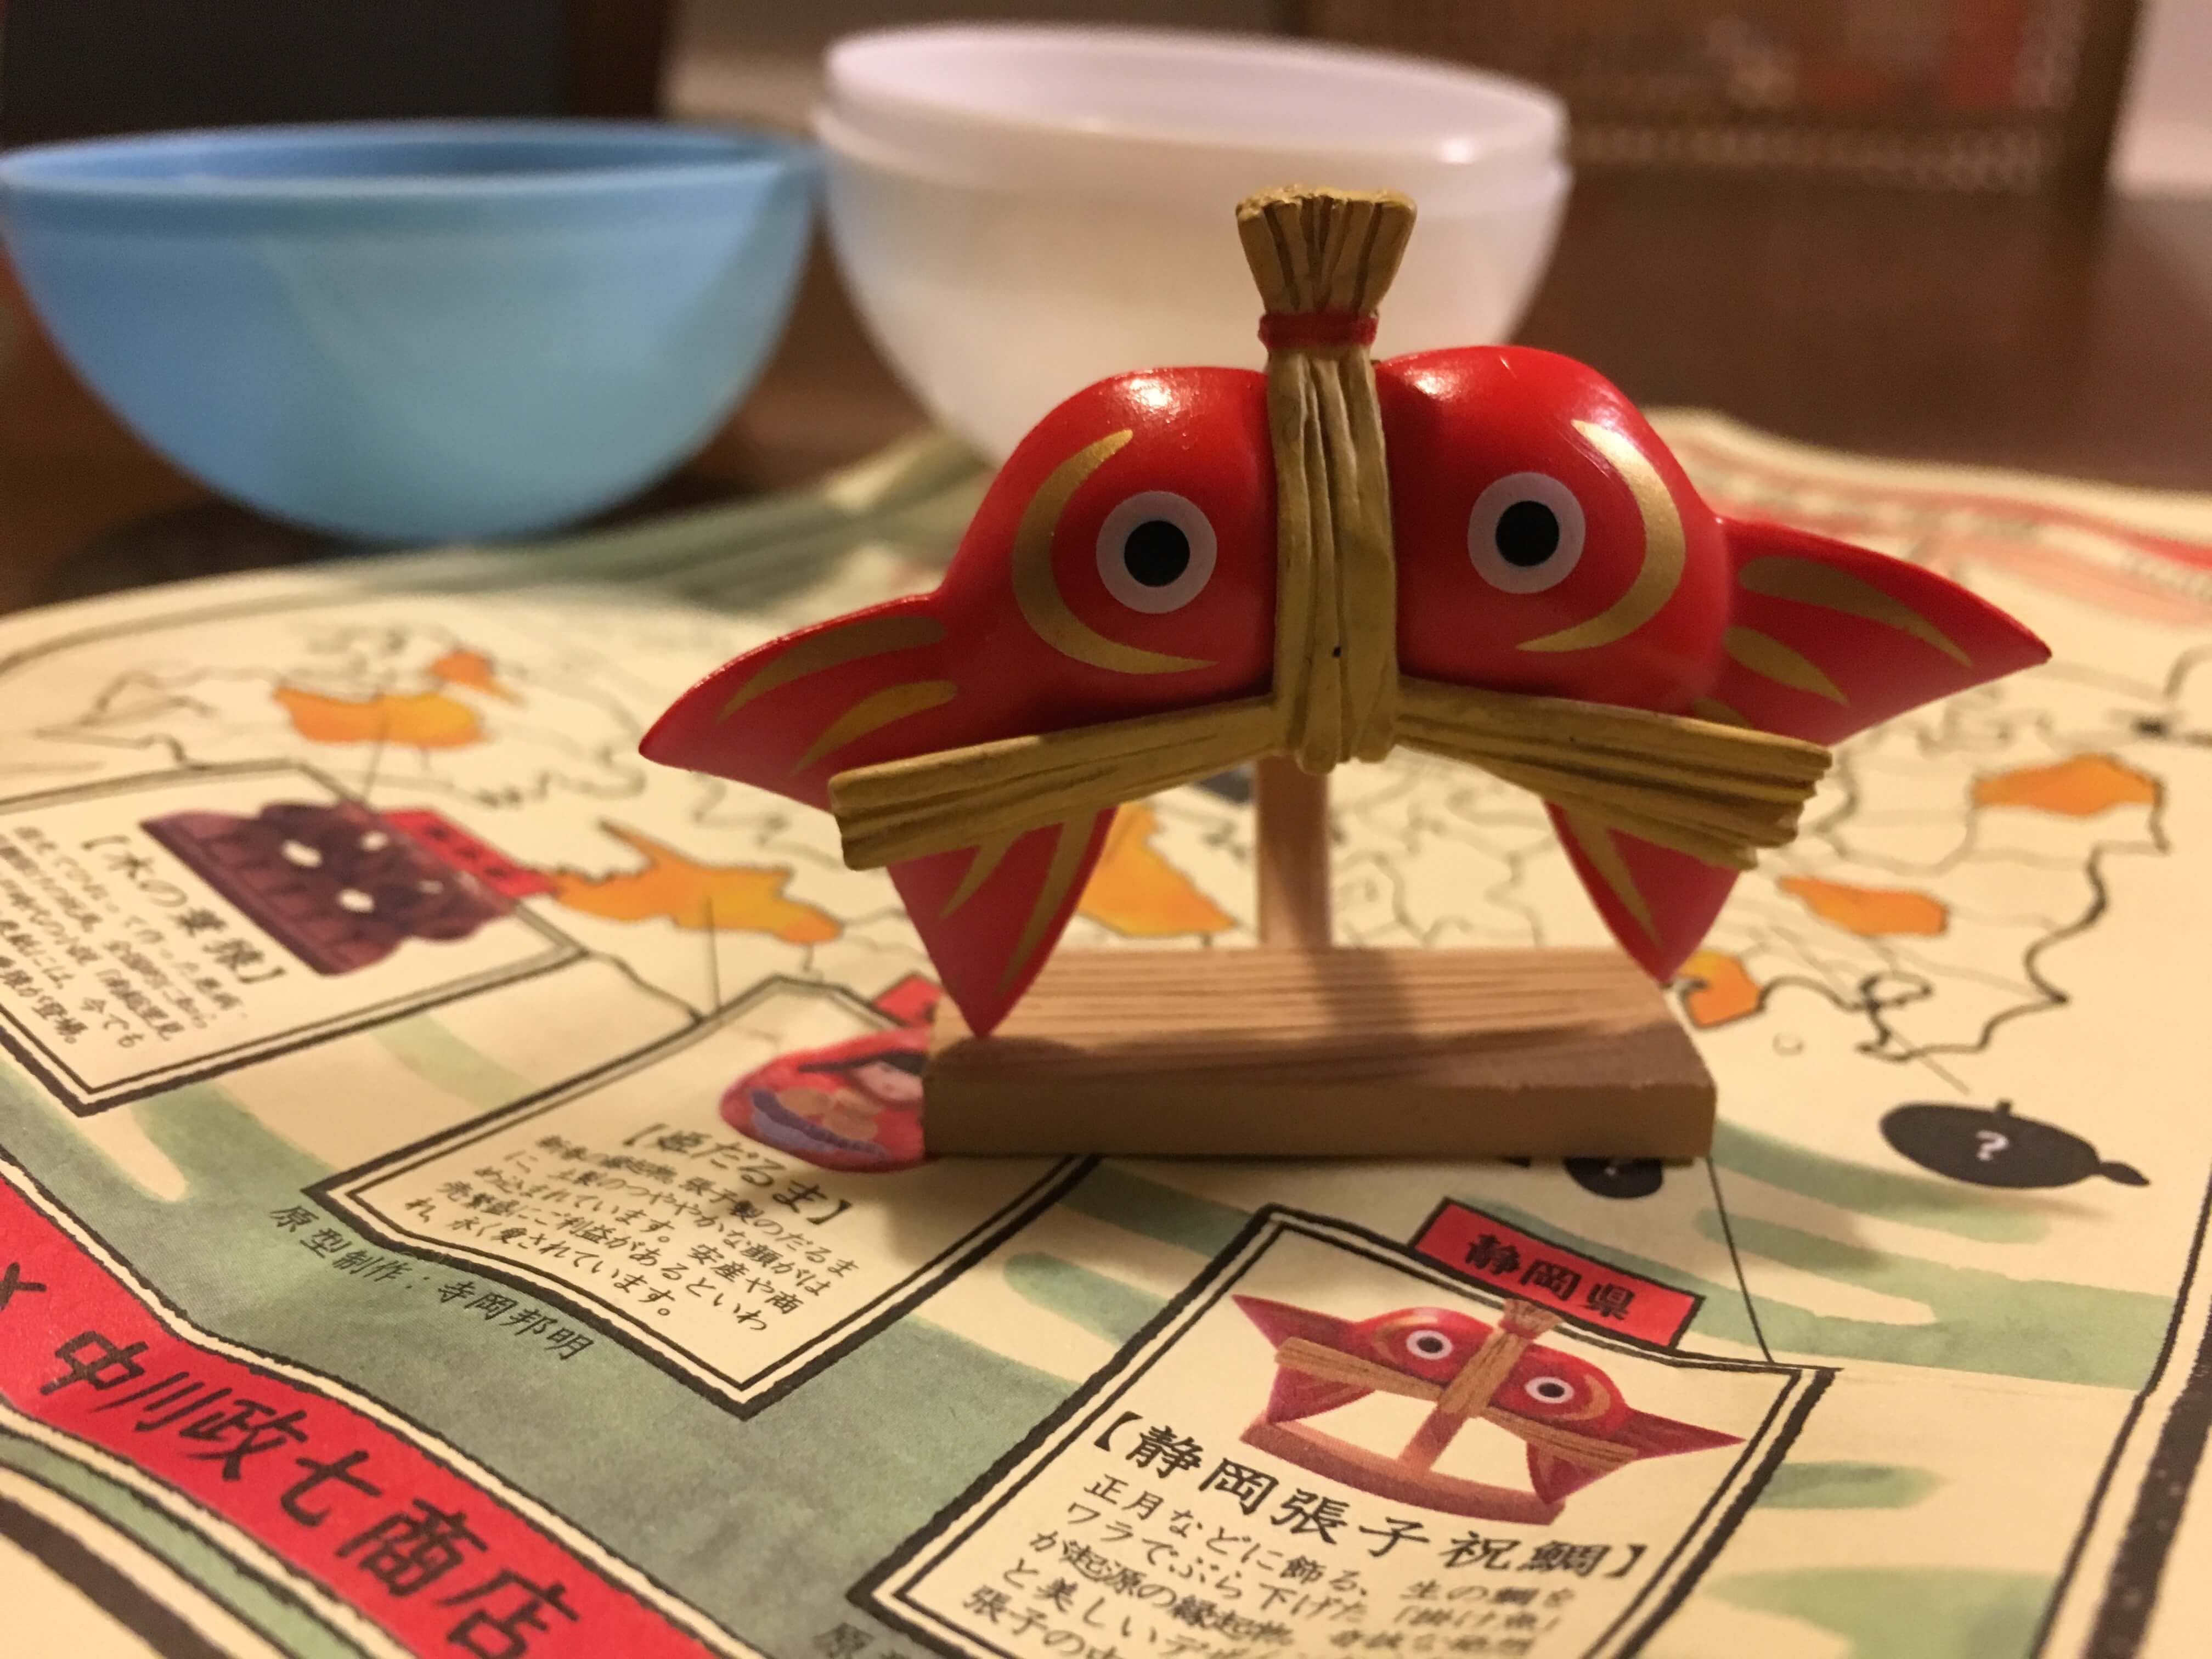  「日本全国まめ郷土玩具蒐集」第4弾より - 静岡張子 祝鯛 -